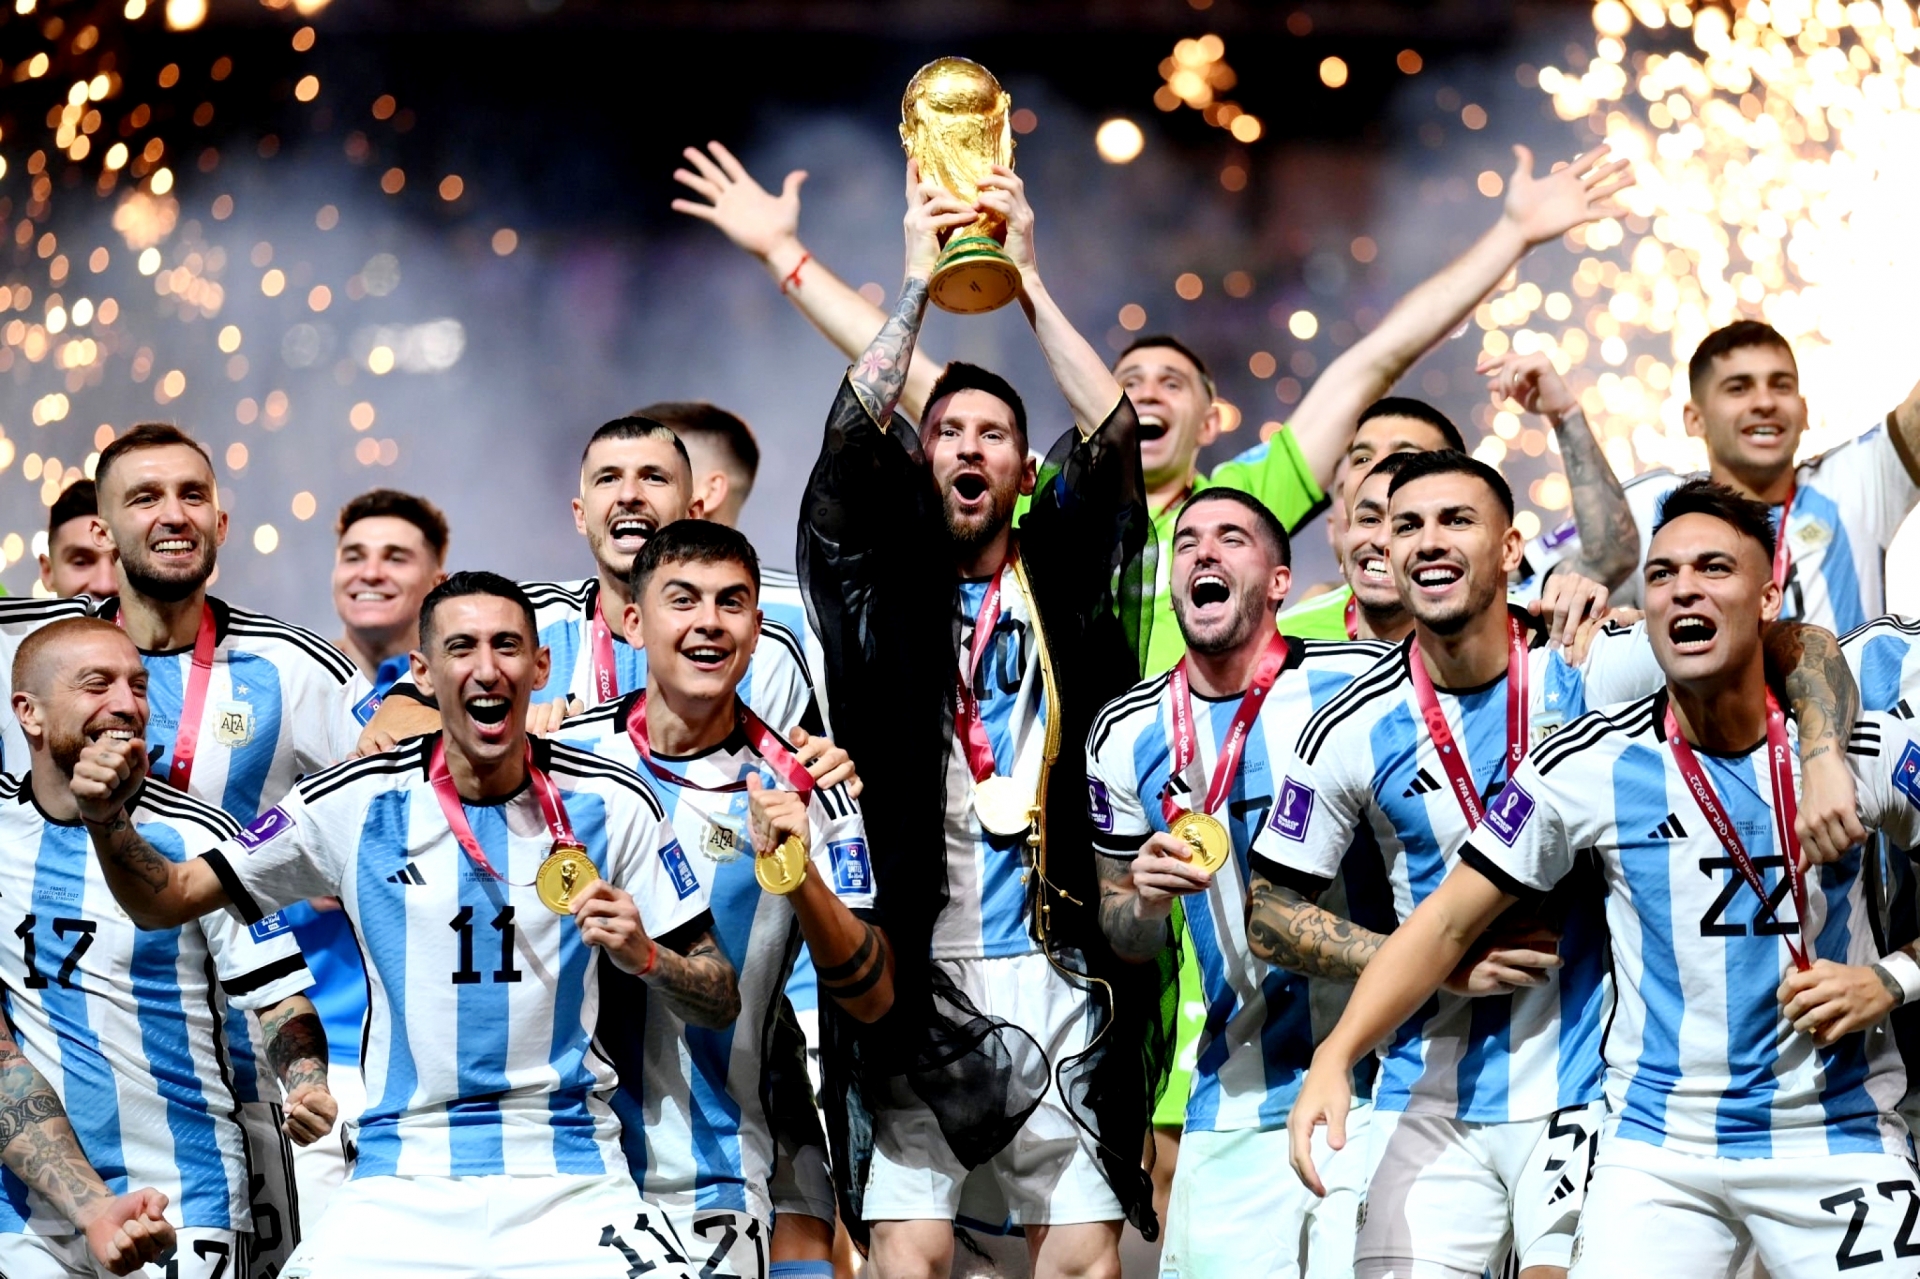 Rộ tin Messi và ĐT Argentina có nguy cơ mất danh hiệu World Cup 2022, chuyện gì đây? - ảnh 3